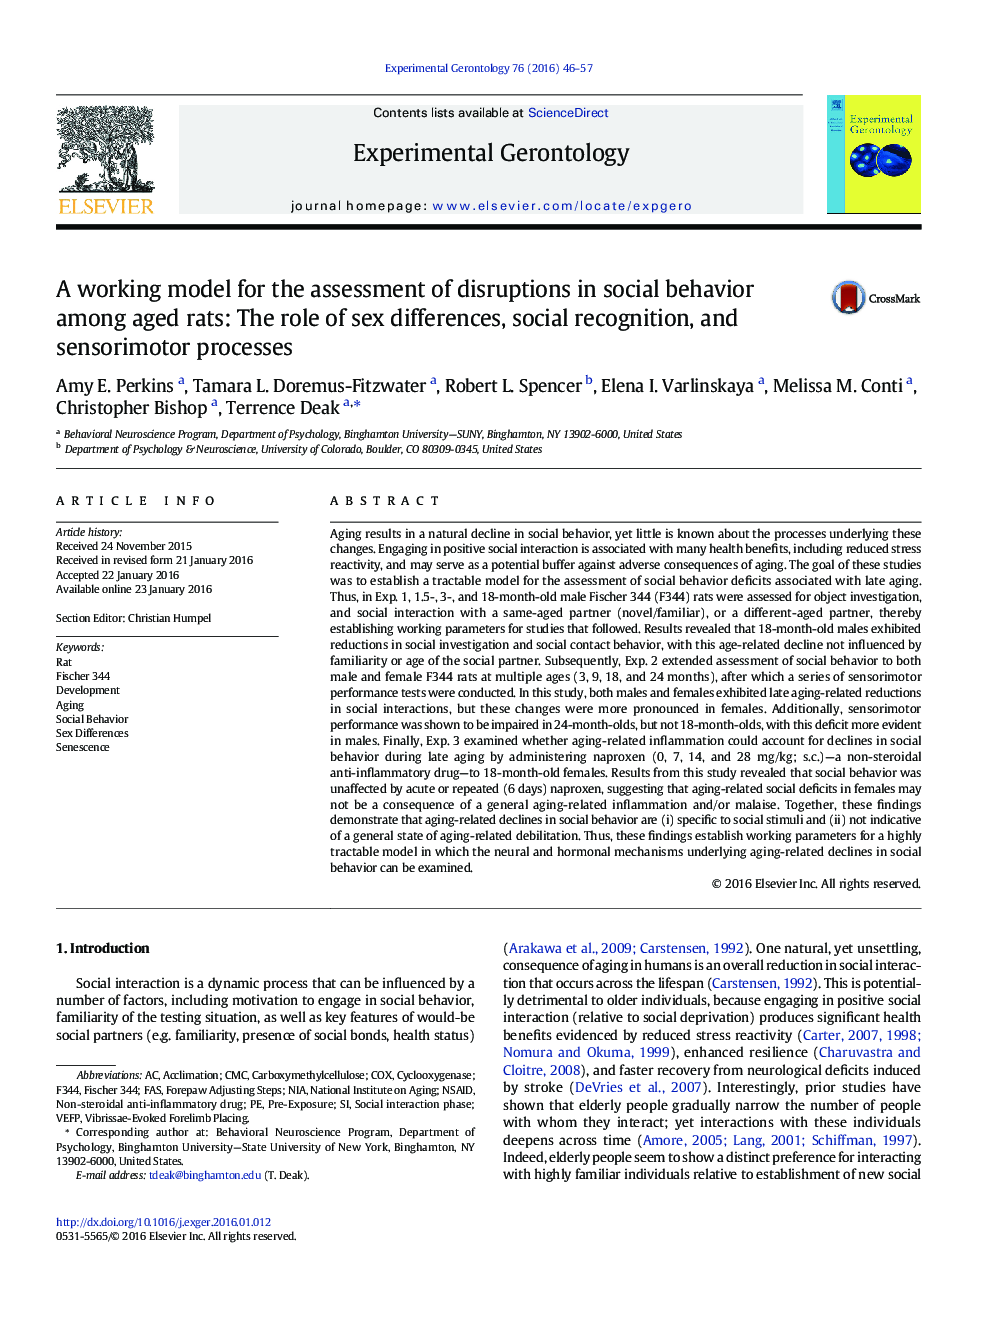 یک مدل کاری برای ارزیابی اختلال رفتار اجتماعی در موش های سالم: نقش تفاوت های جنسیتی، شناخت اجتماعی و فرآیندهای سنسوری 